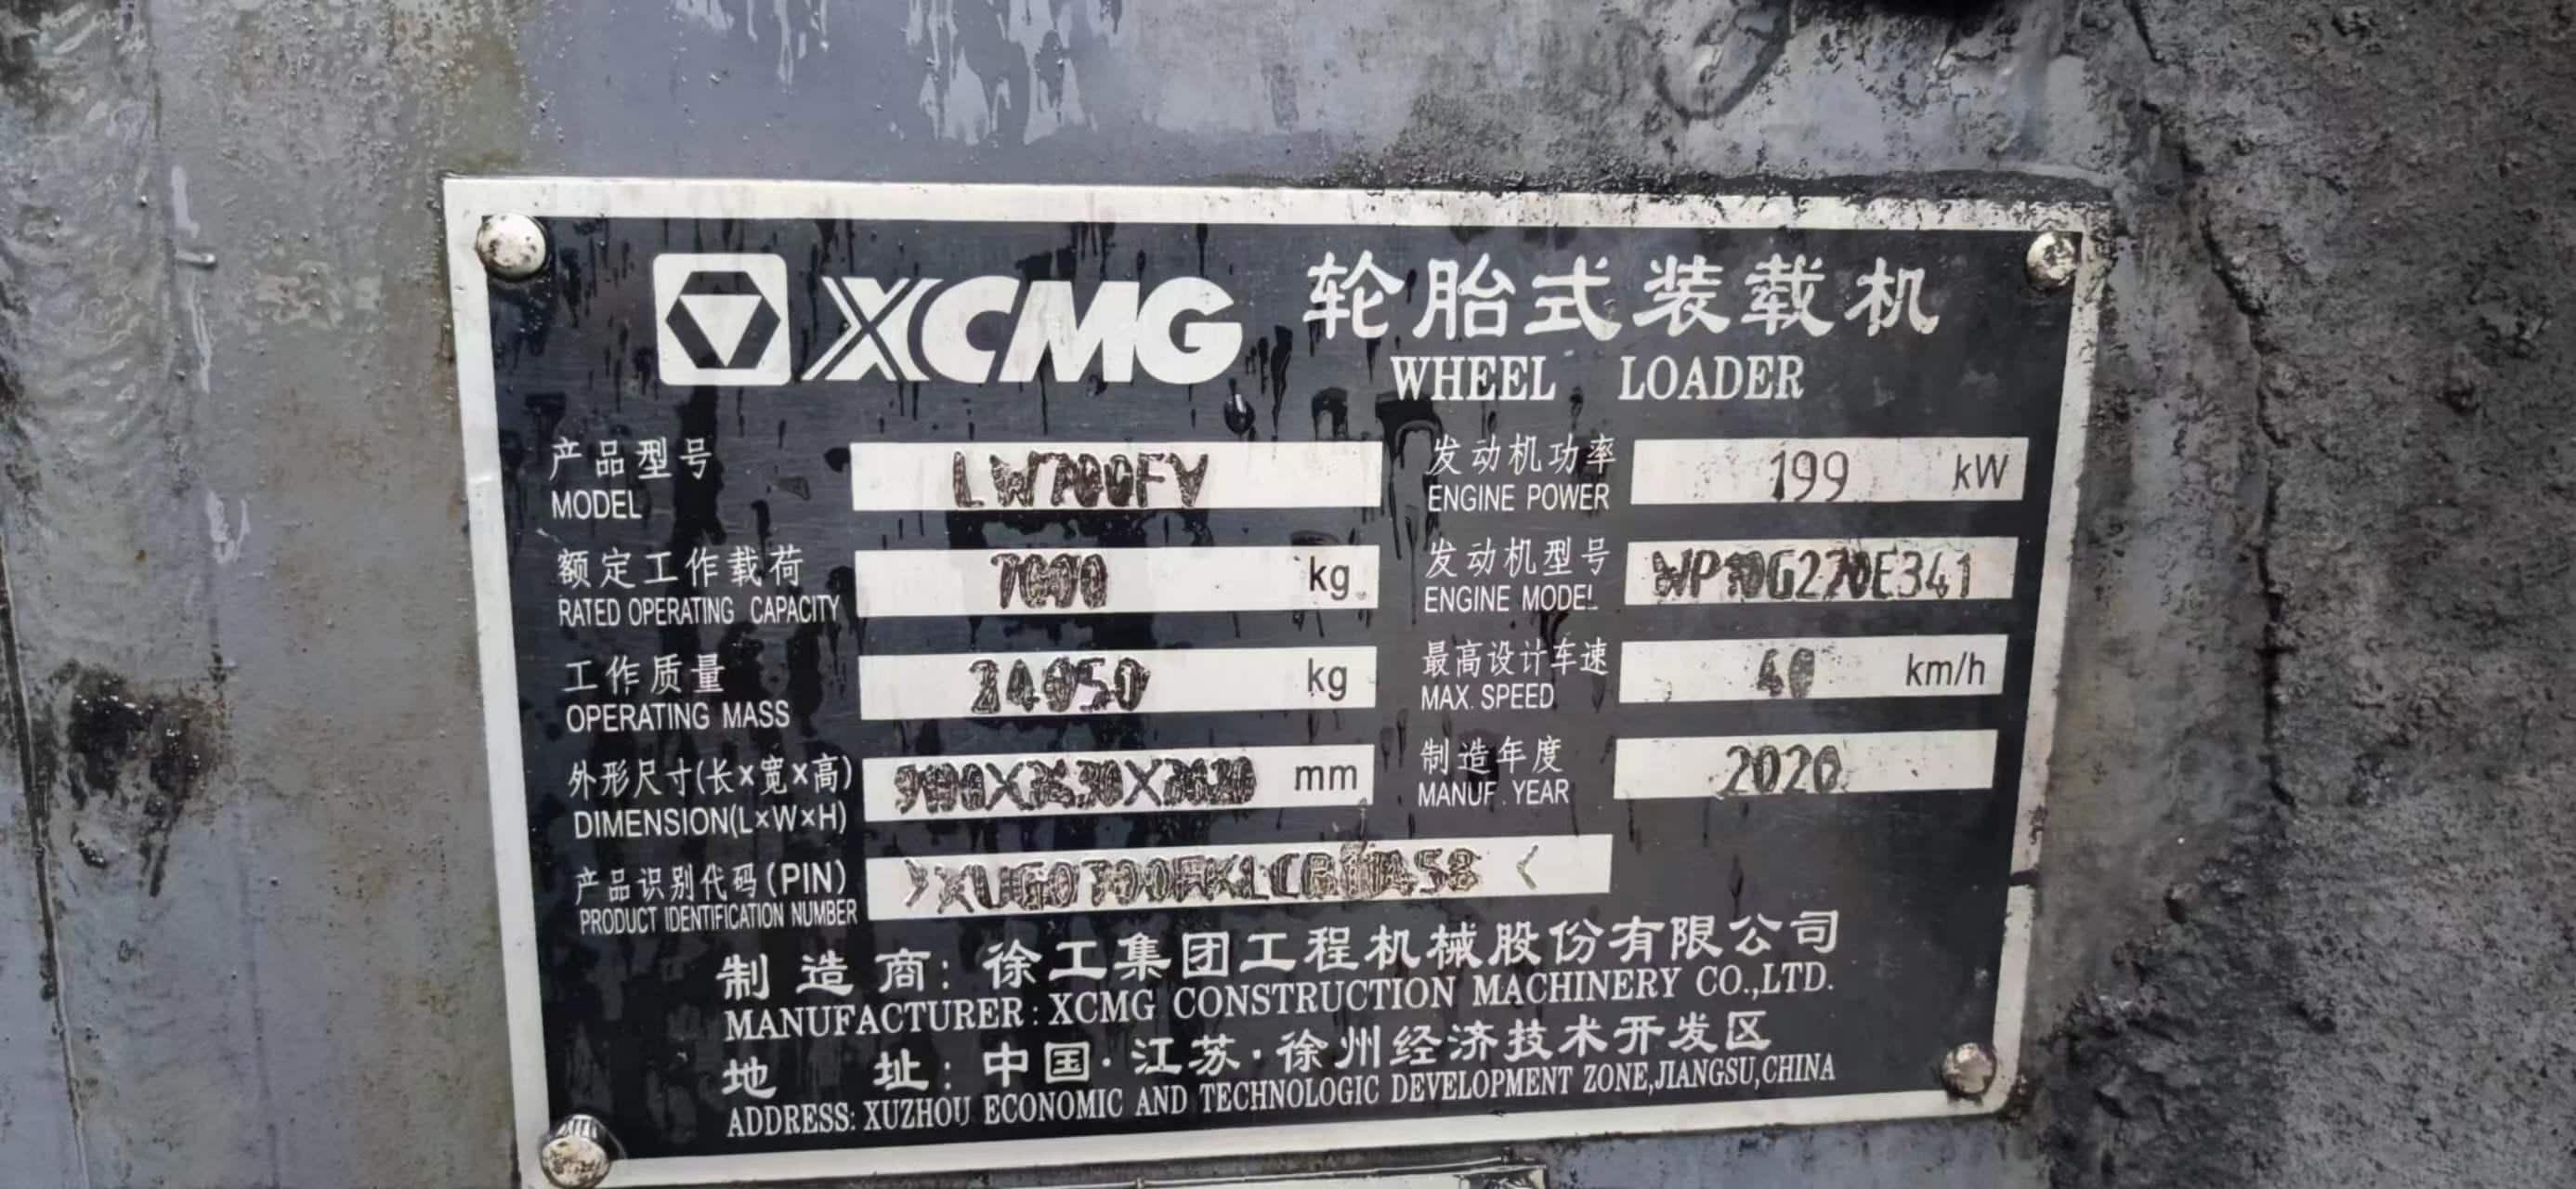 XCMG LW700FV wheel loader